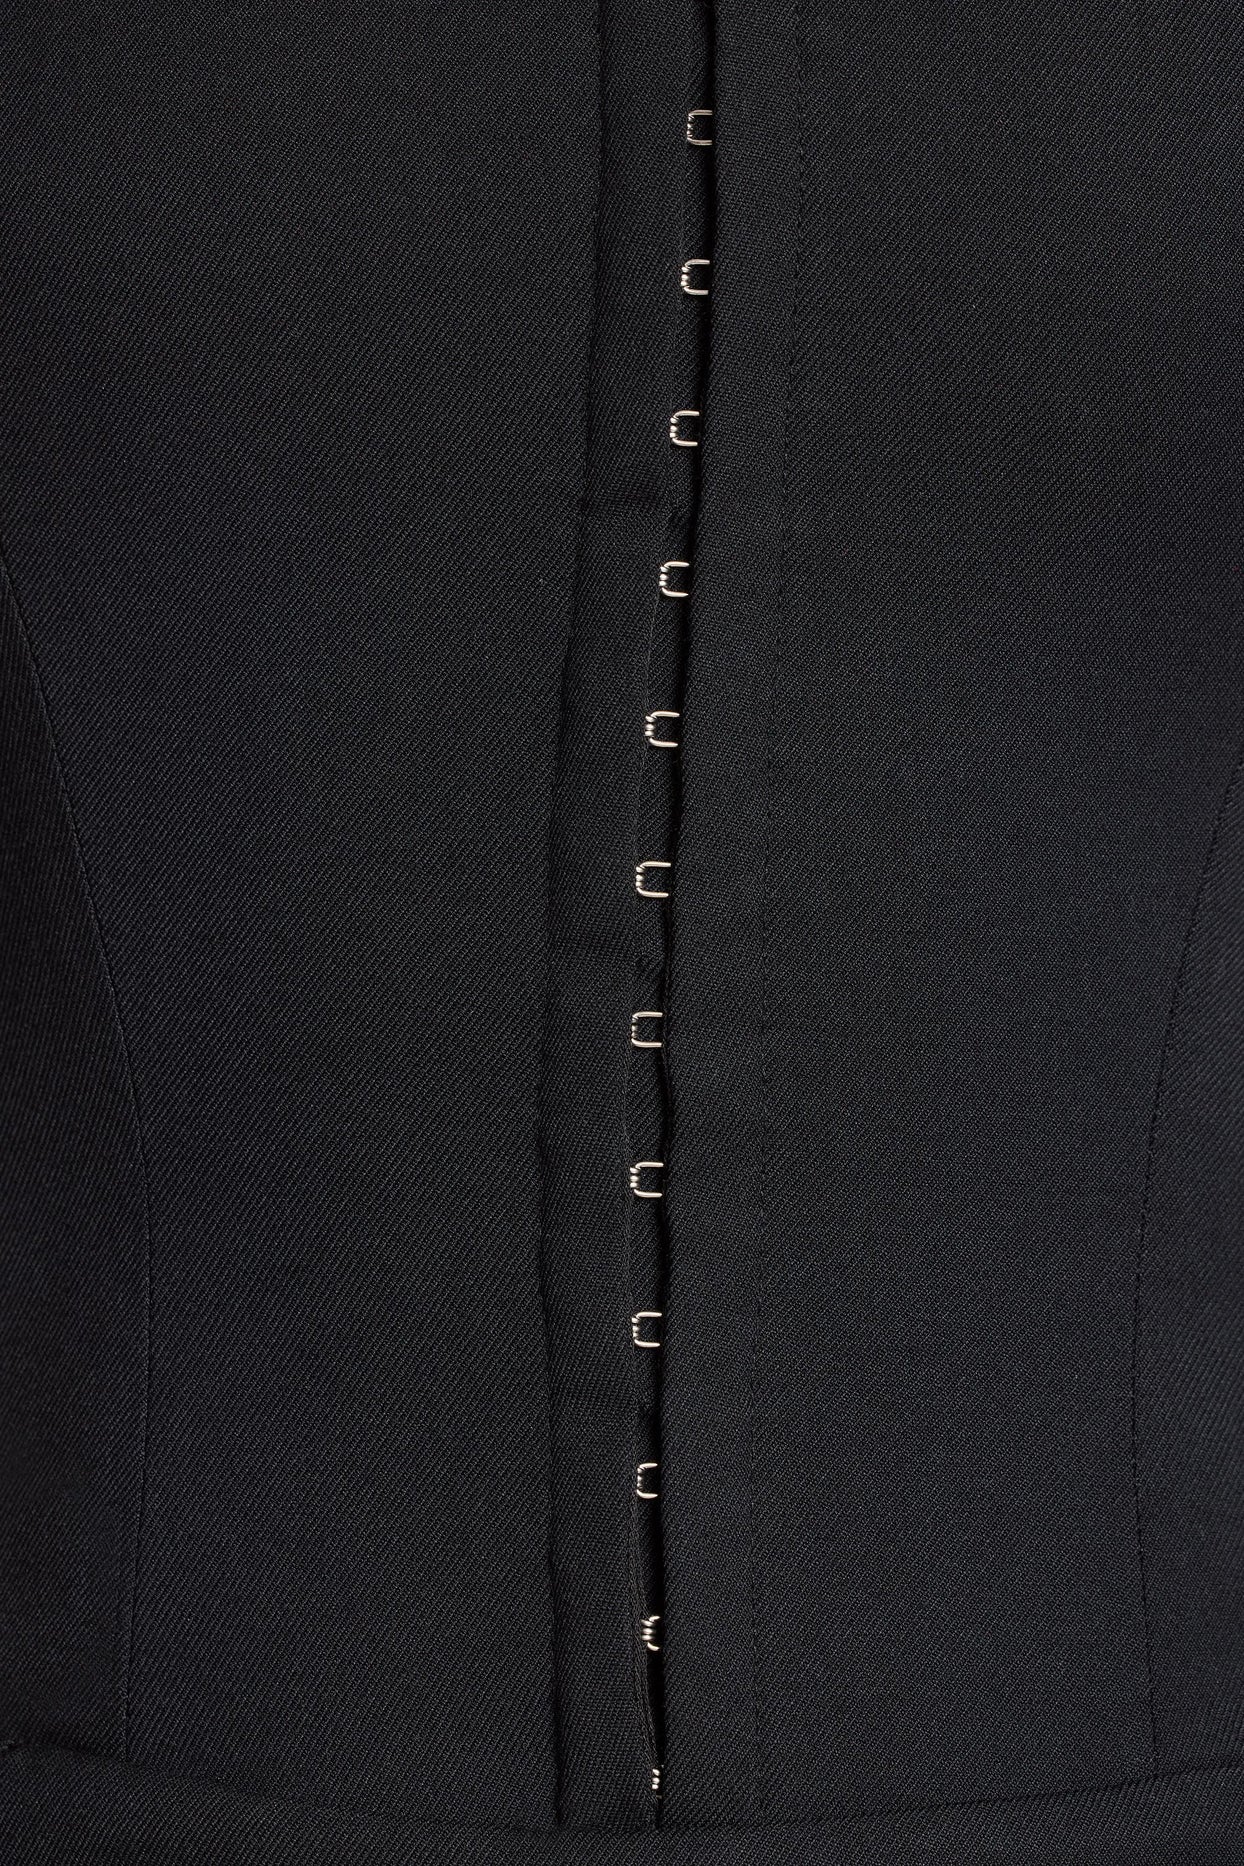 Combinaison corset bandeau en sergé brossé, noire